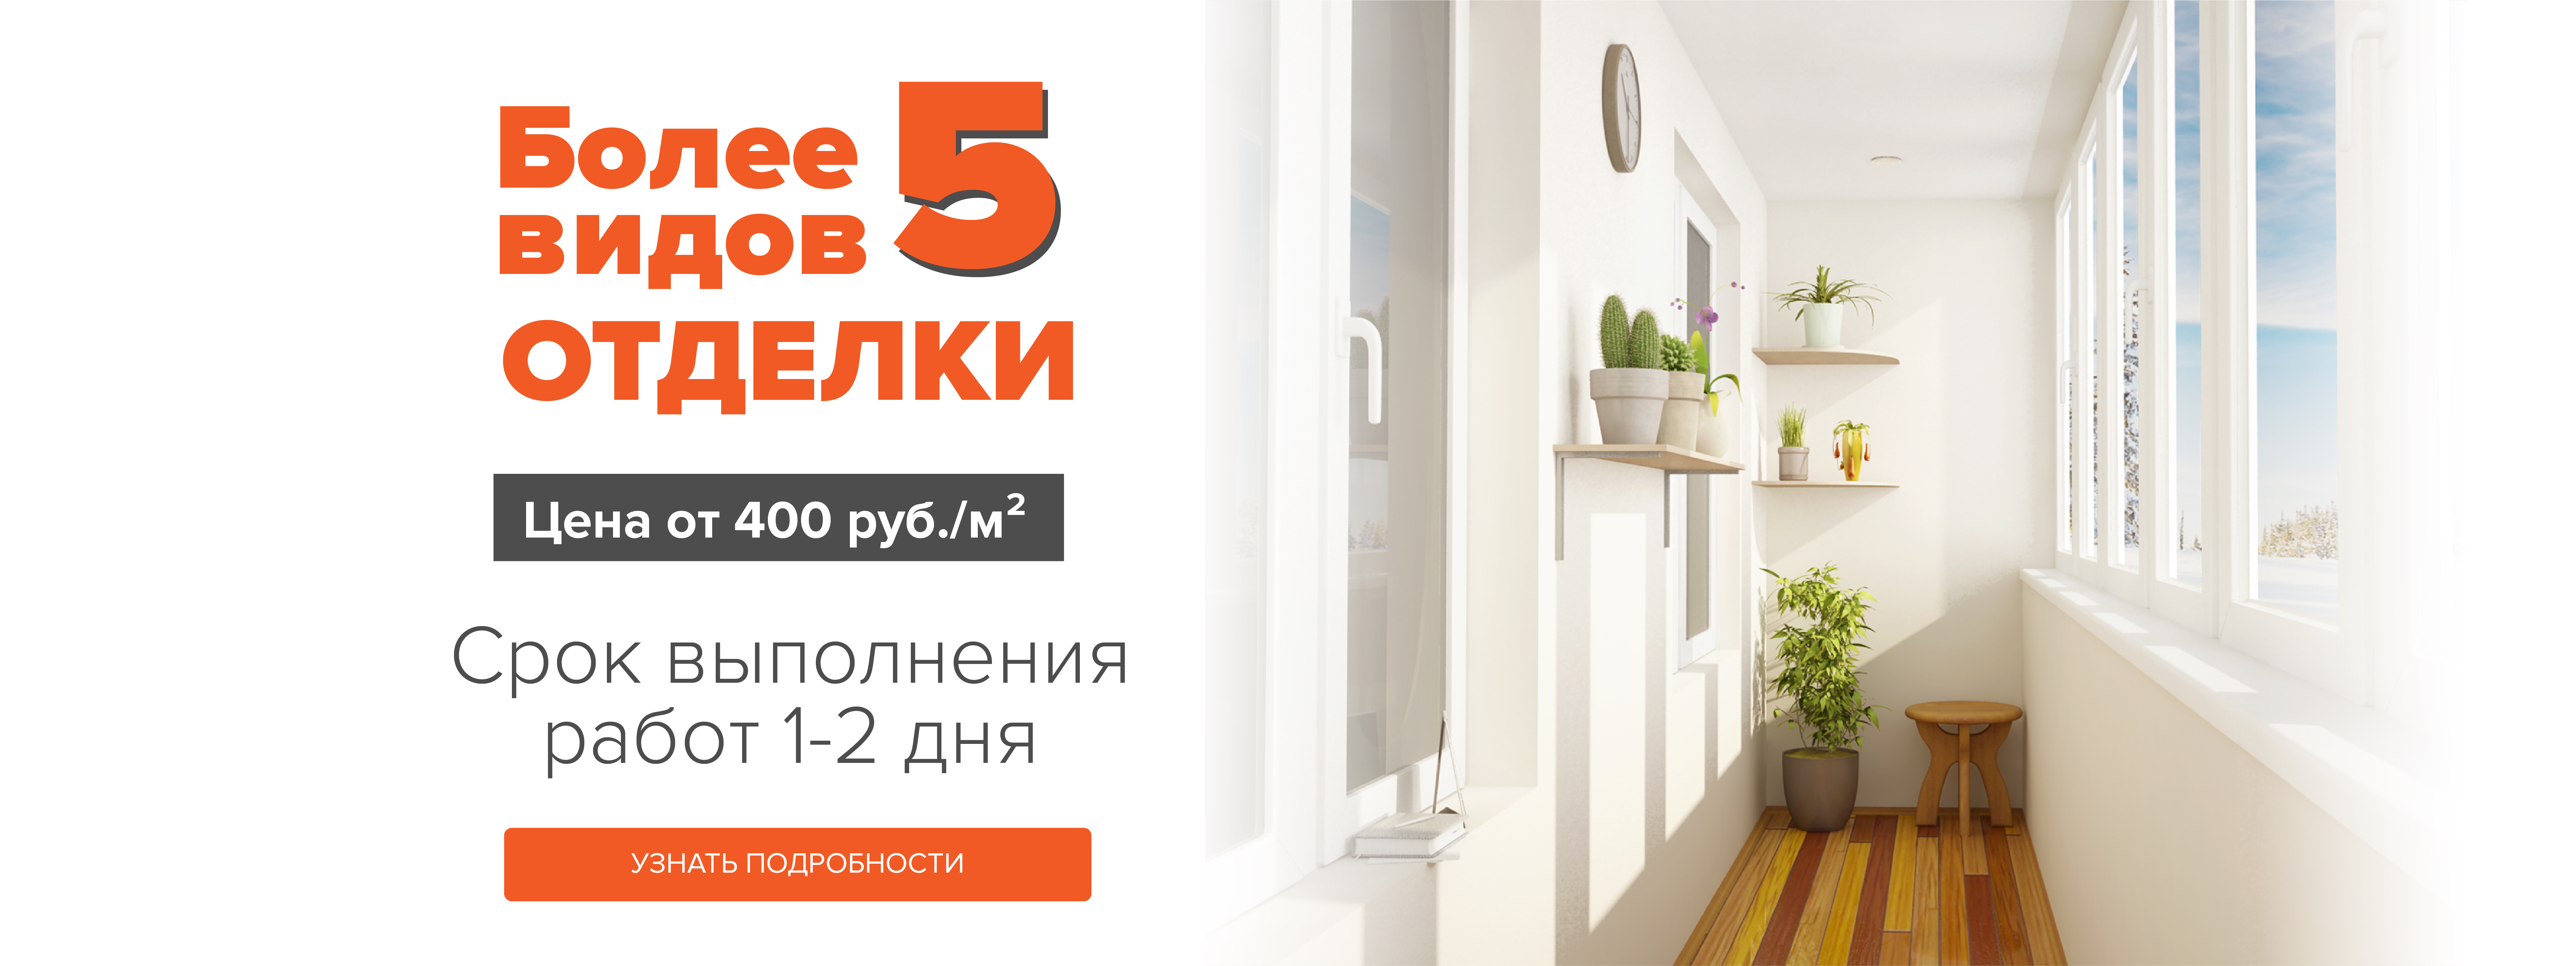 Отделка балкона и лоджии в Брянске по цене от 900 руб/м2